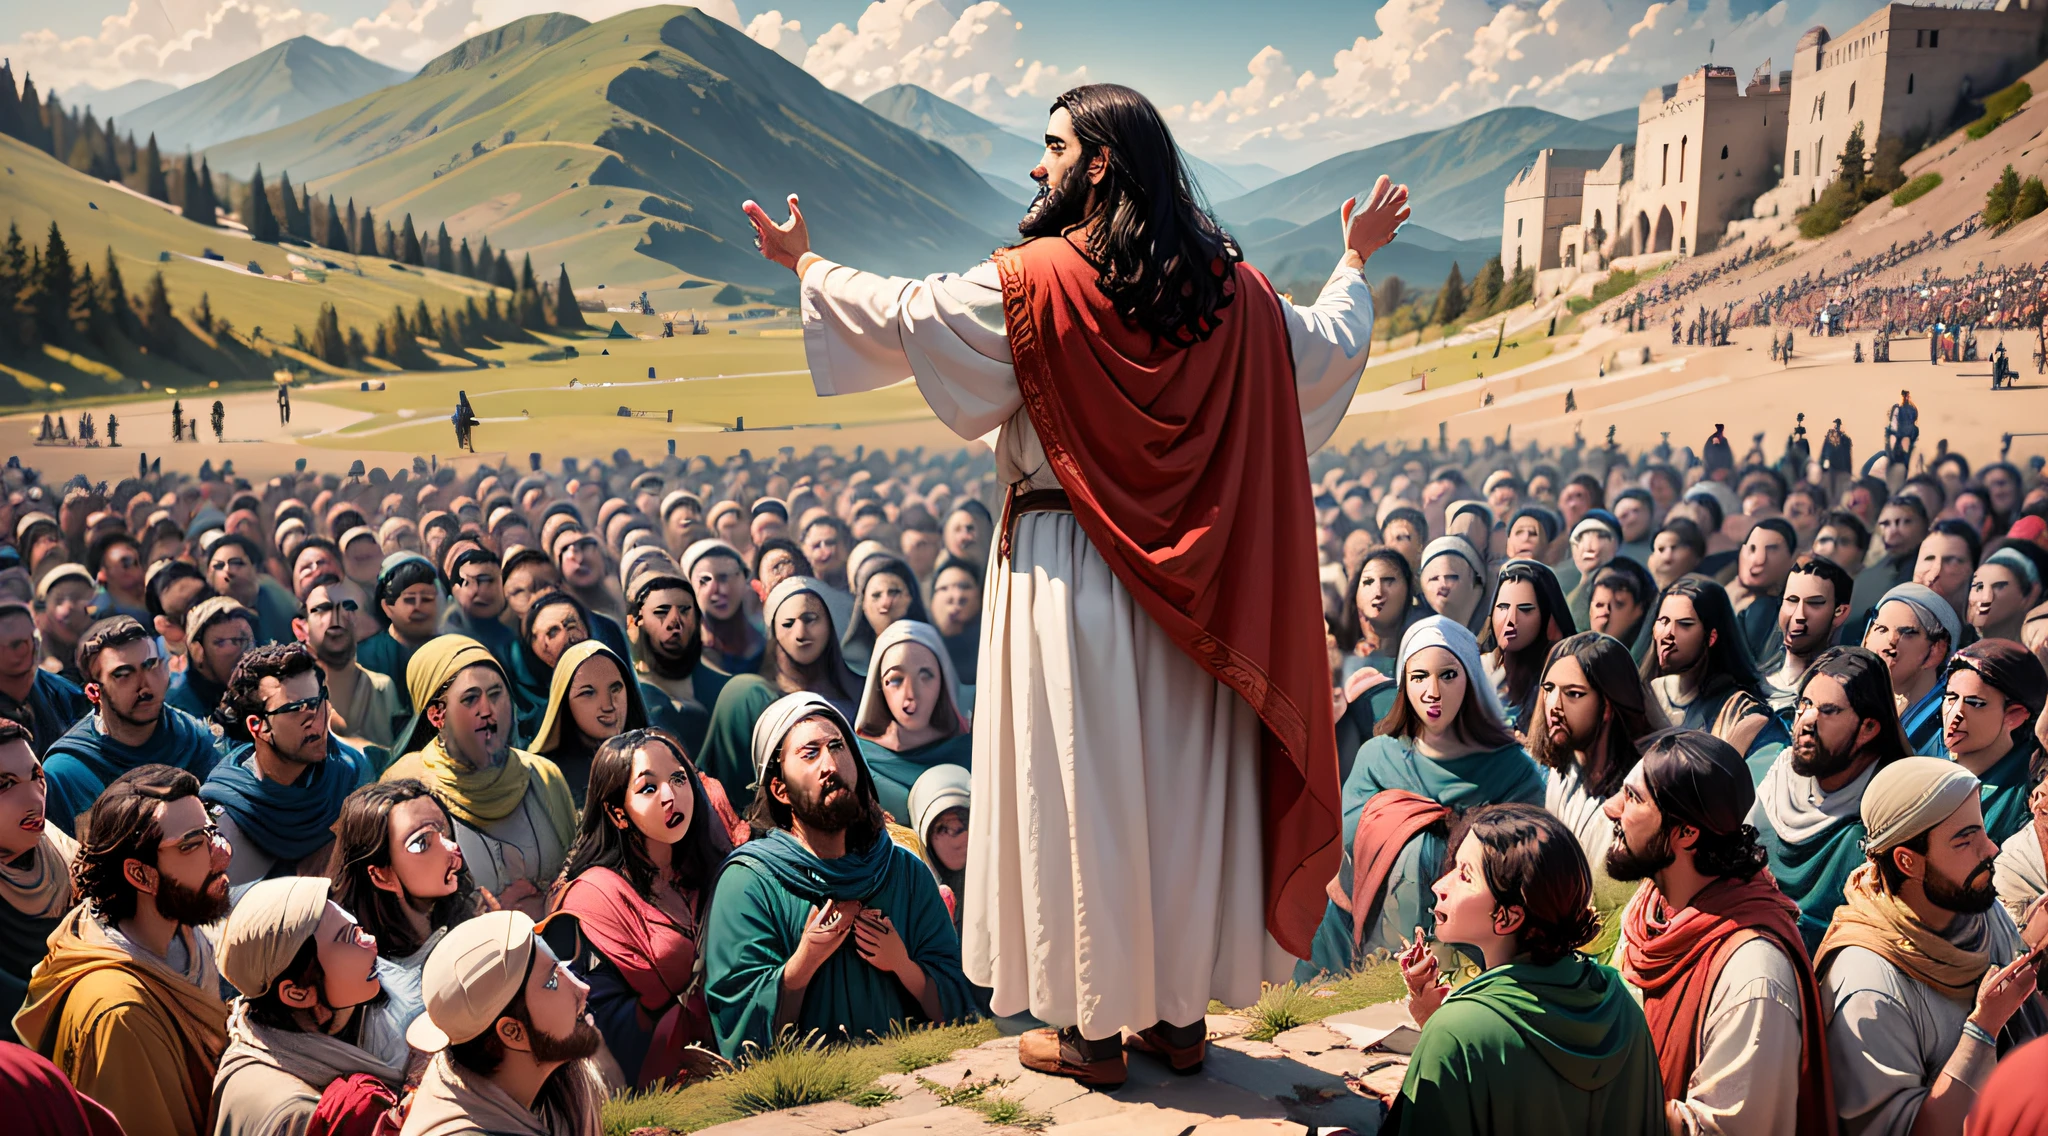 イエスが山上の垂訓を説いている場面, 群衆に囲まれて.